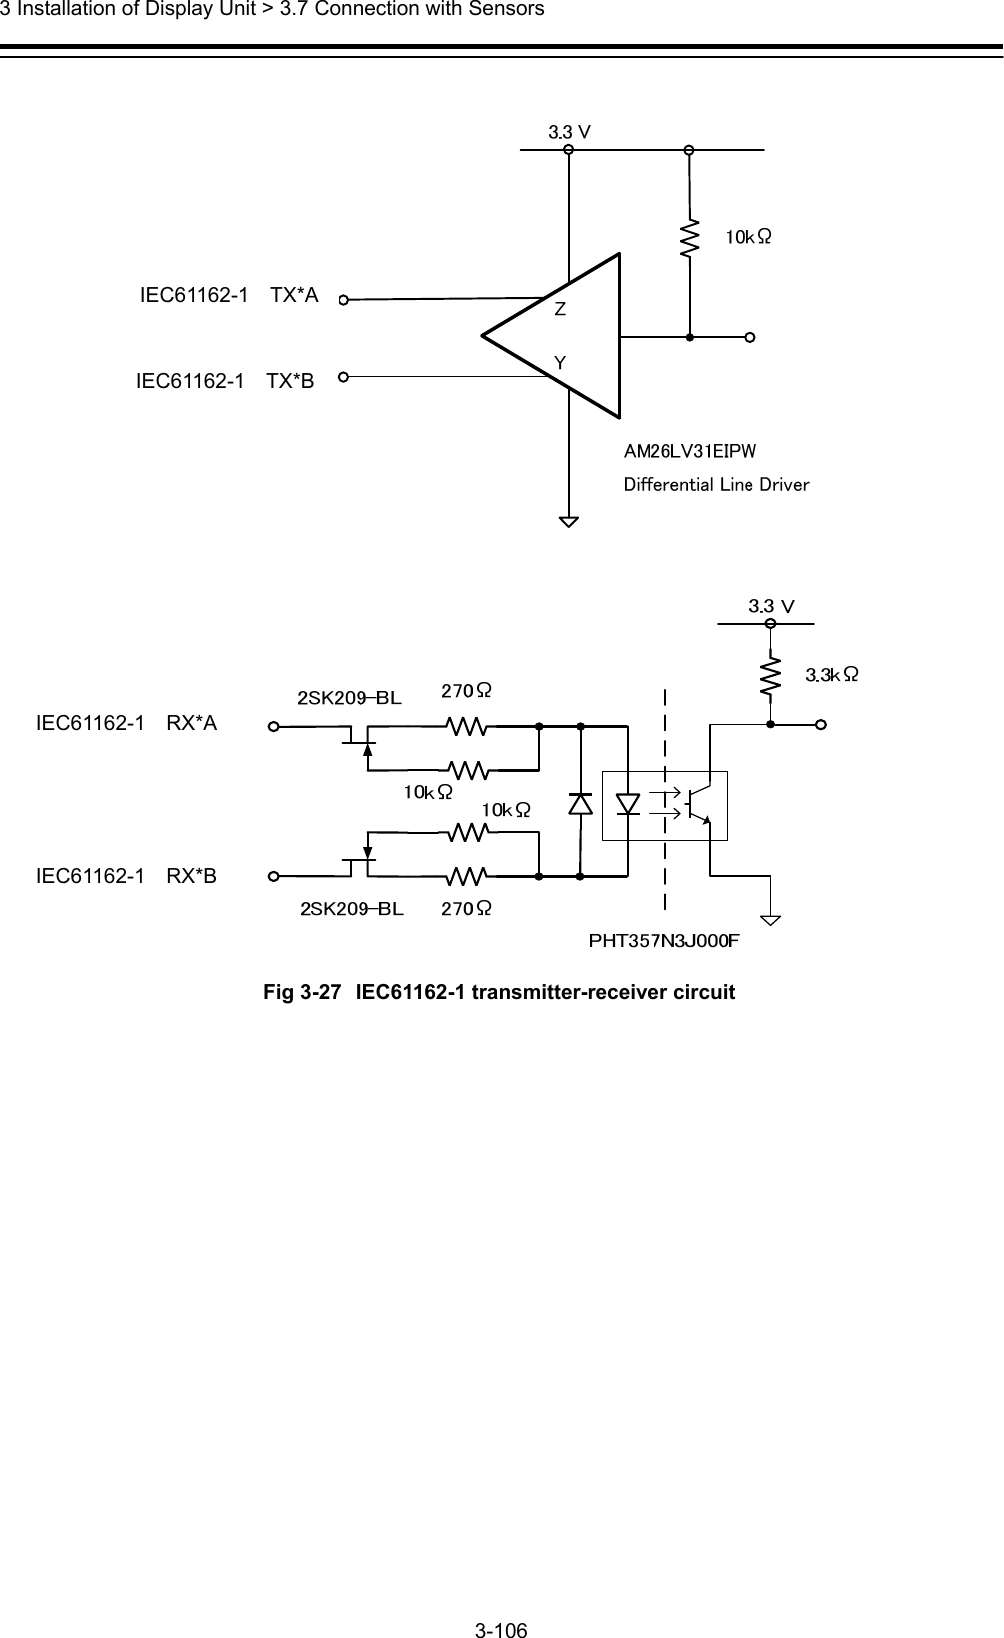  3 Installation of Display Unit &gt; 3.7 Connection with Sensors 3-106      Fig 3-27 IEC61162-1 transmitter-receiver circuit  IEC61162-1  RX*A IEC61162-1  TX*B IEC61162-1  RX*B IEC61162-1  TX*A 